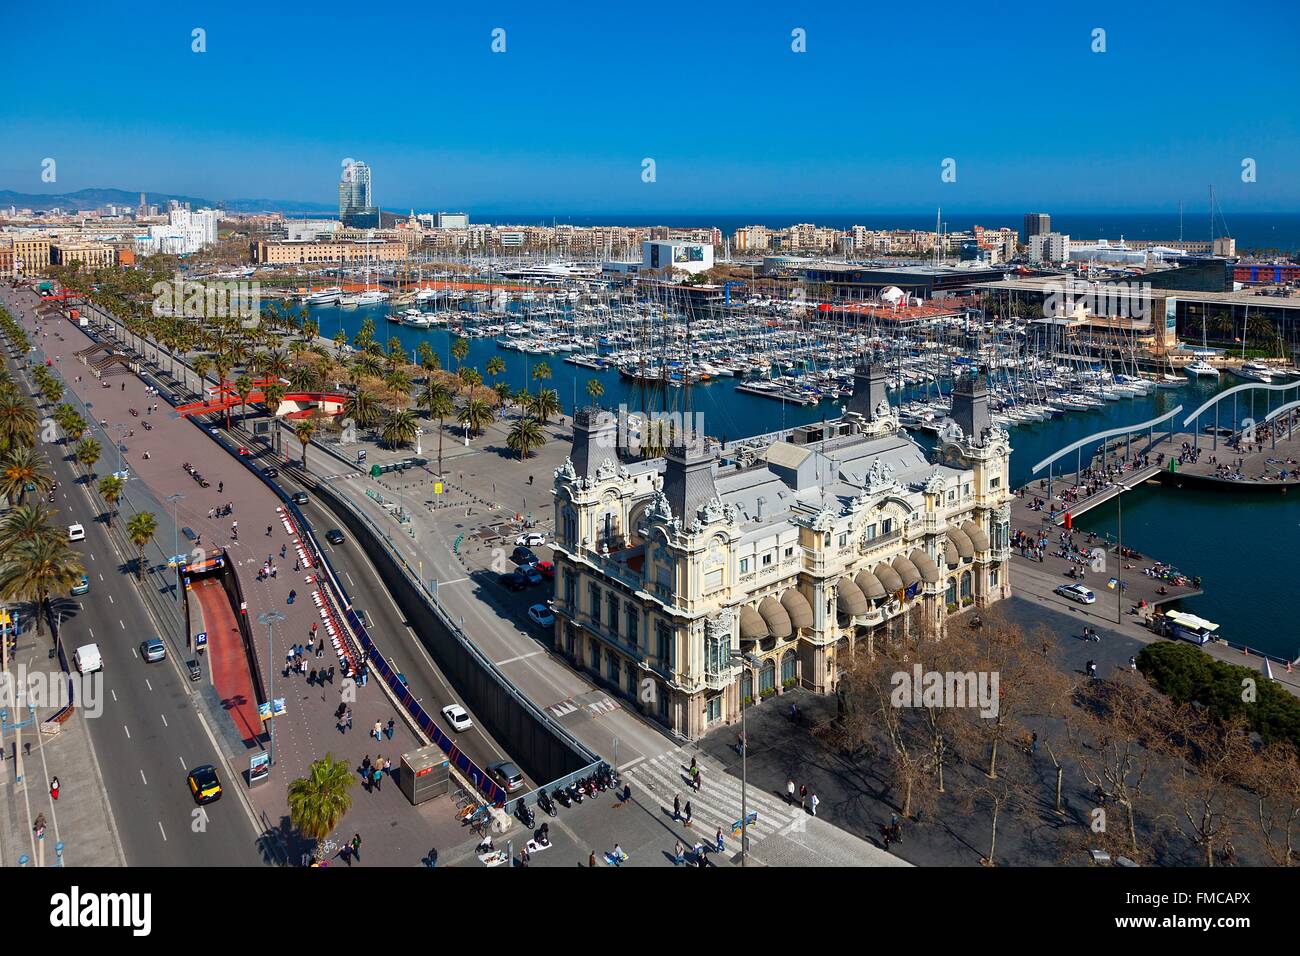 Espagne, Catalogne, Barcelone, vue panoramique sur le Port Vell, le vieux port et le quartier de Barceloneta Banque D'Images